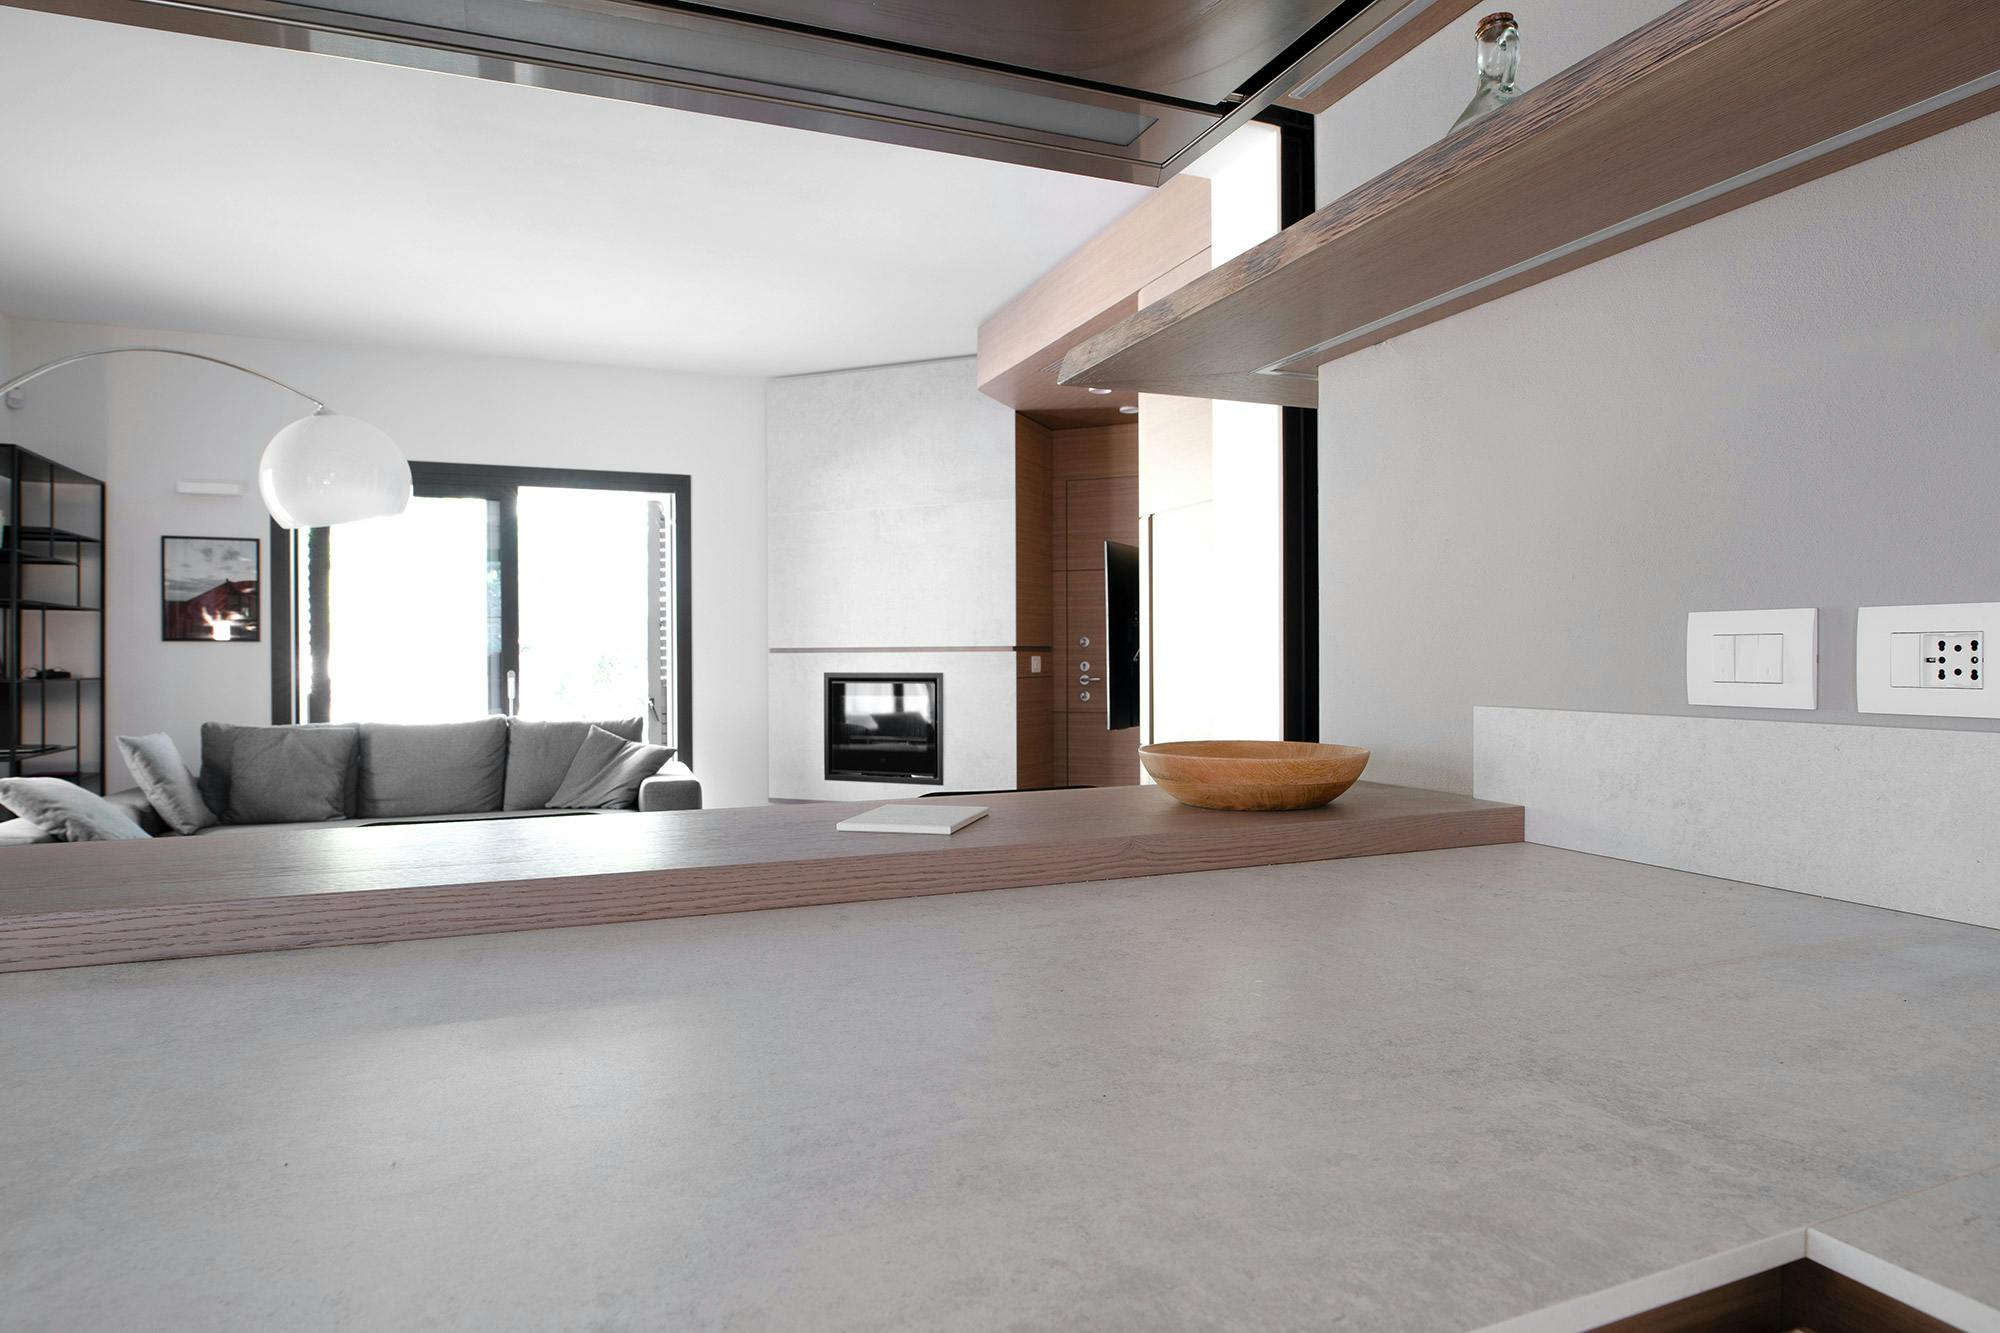 Bildnummer 41 des aktuellen Abschnitts von One material, a range of uses: this modern house features DKTN Lunar in the fireplace, kitchen and bathroom von Cosentino Deutschland